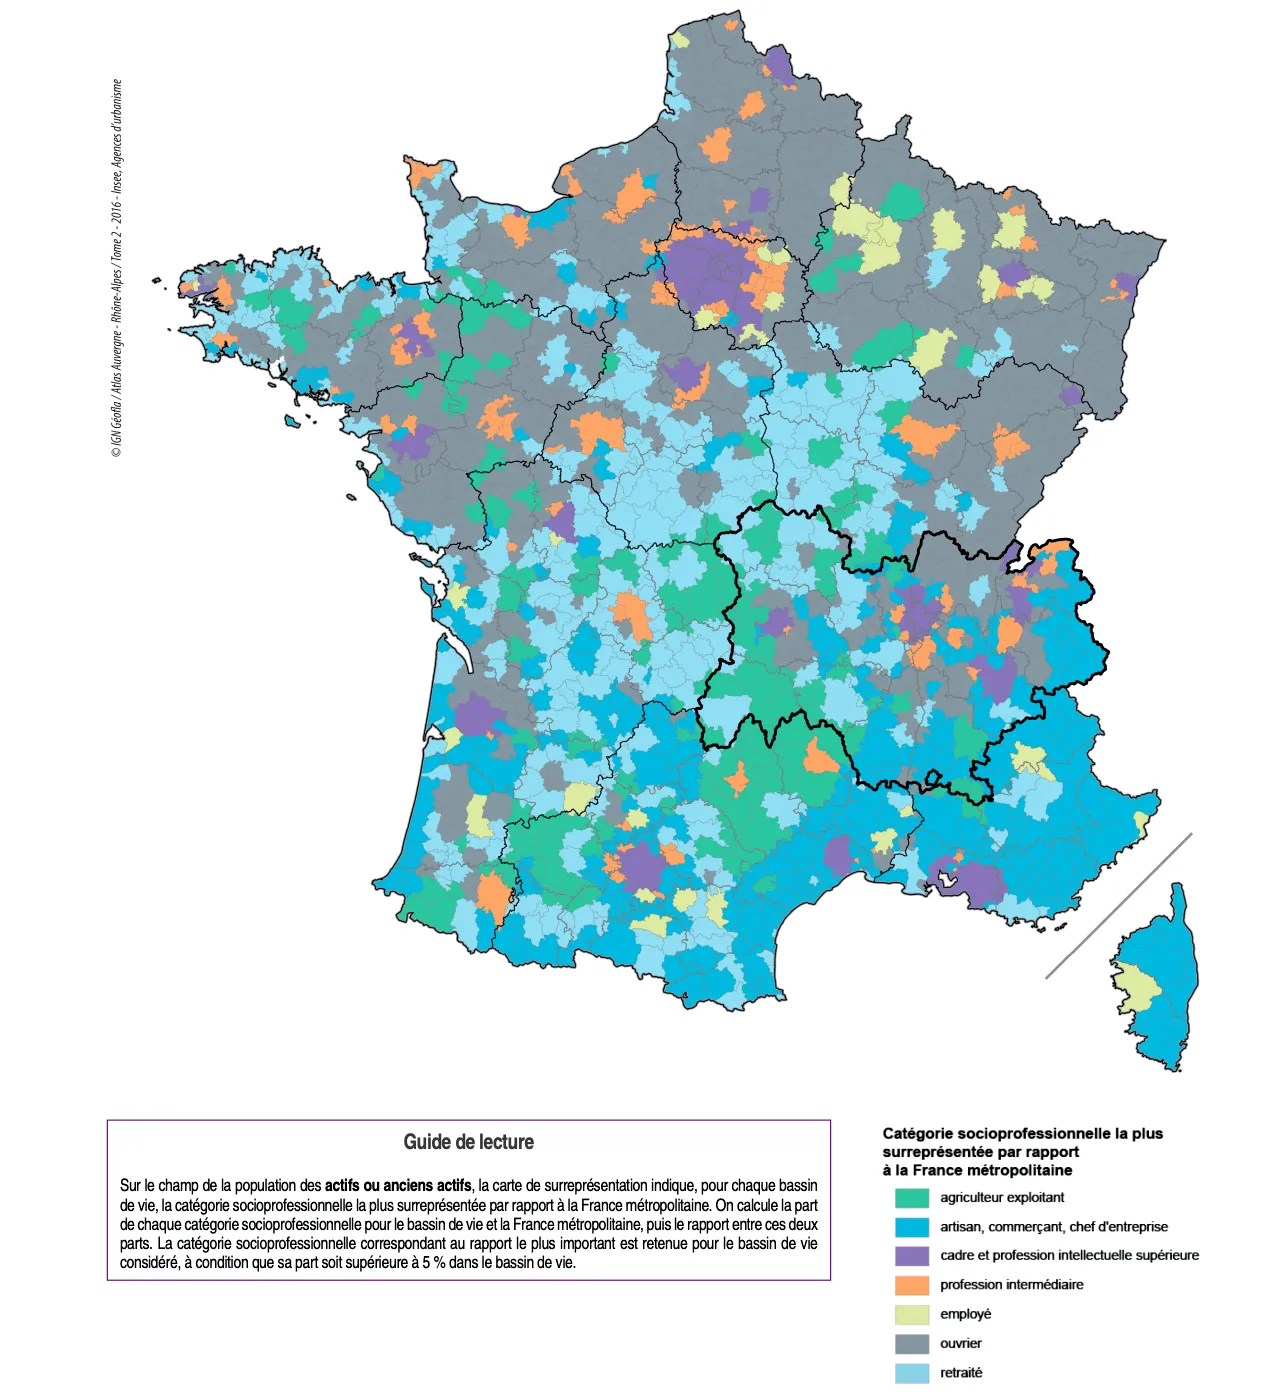 Catégorie socioprofessionnelle la plus surreprésentée par rapport à la France métropolitaine, Insee, 2016.